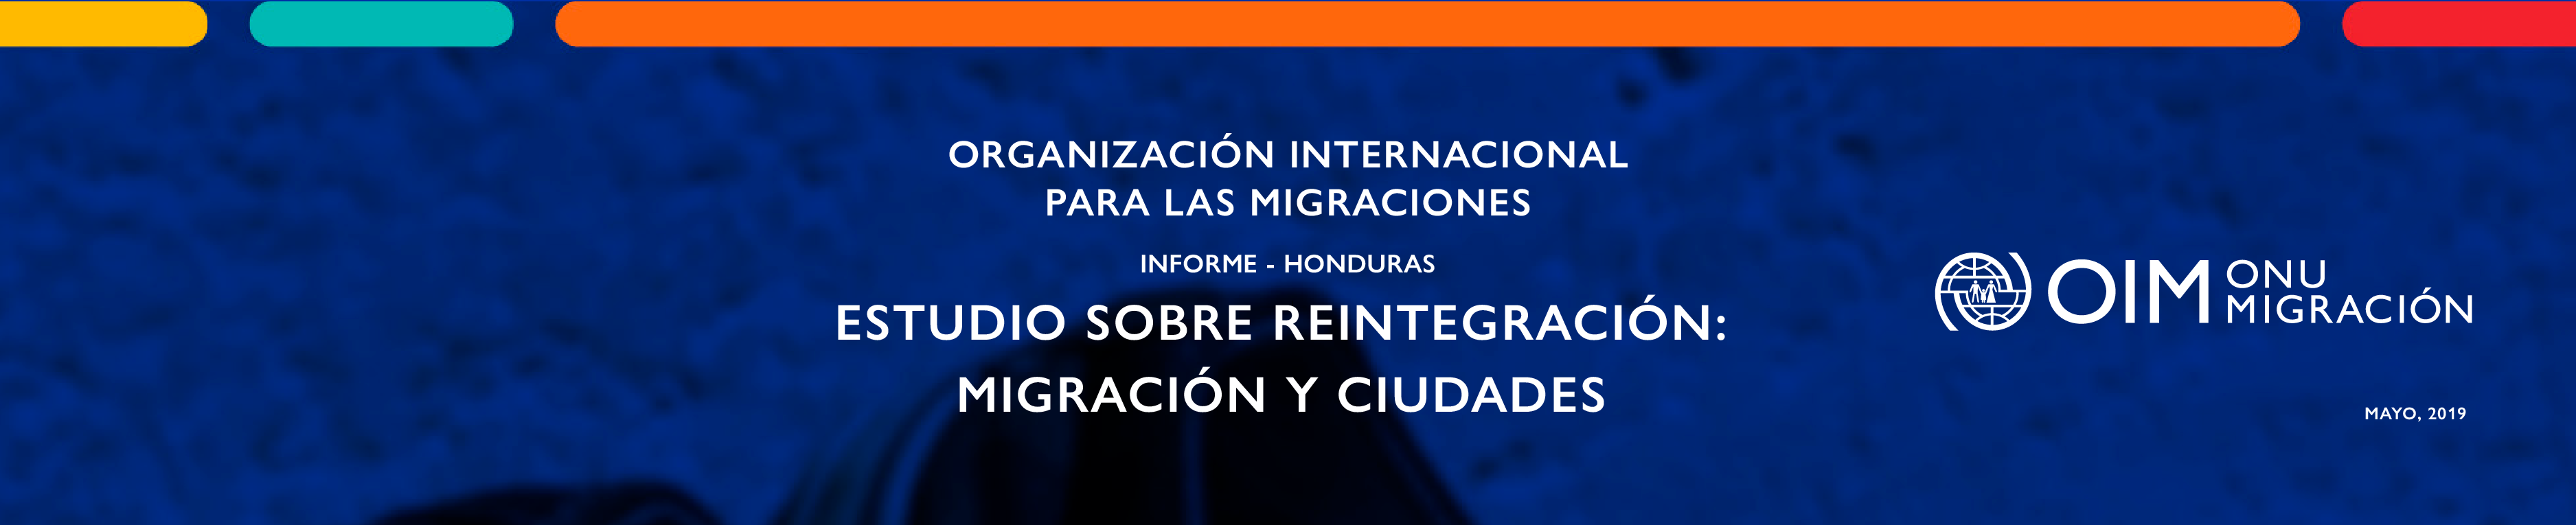 Estudio sobre reintegración: migración y ciudades | Informe Honduras